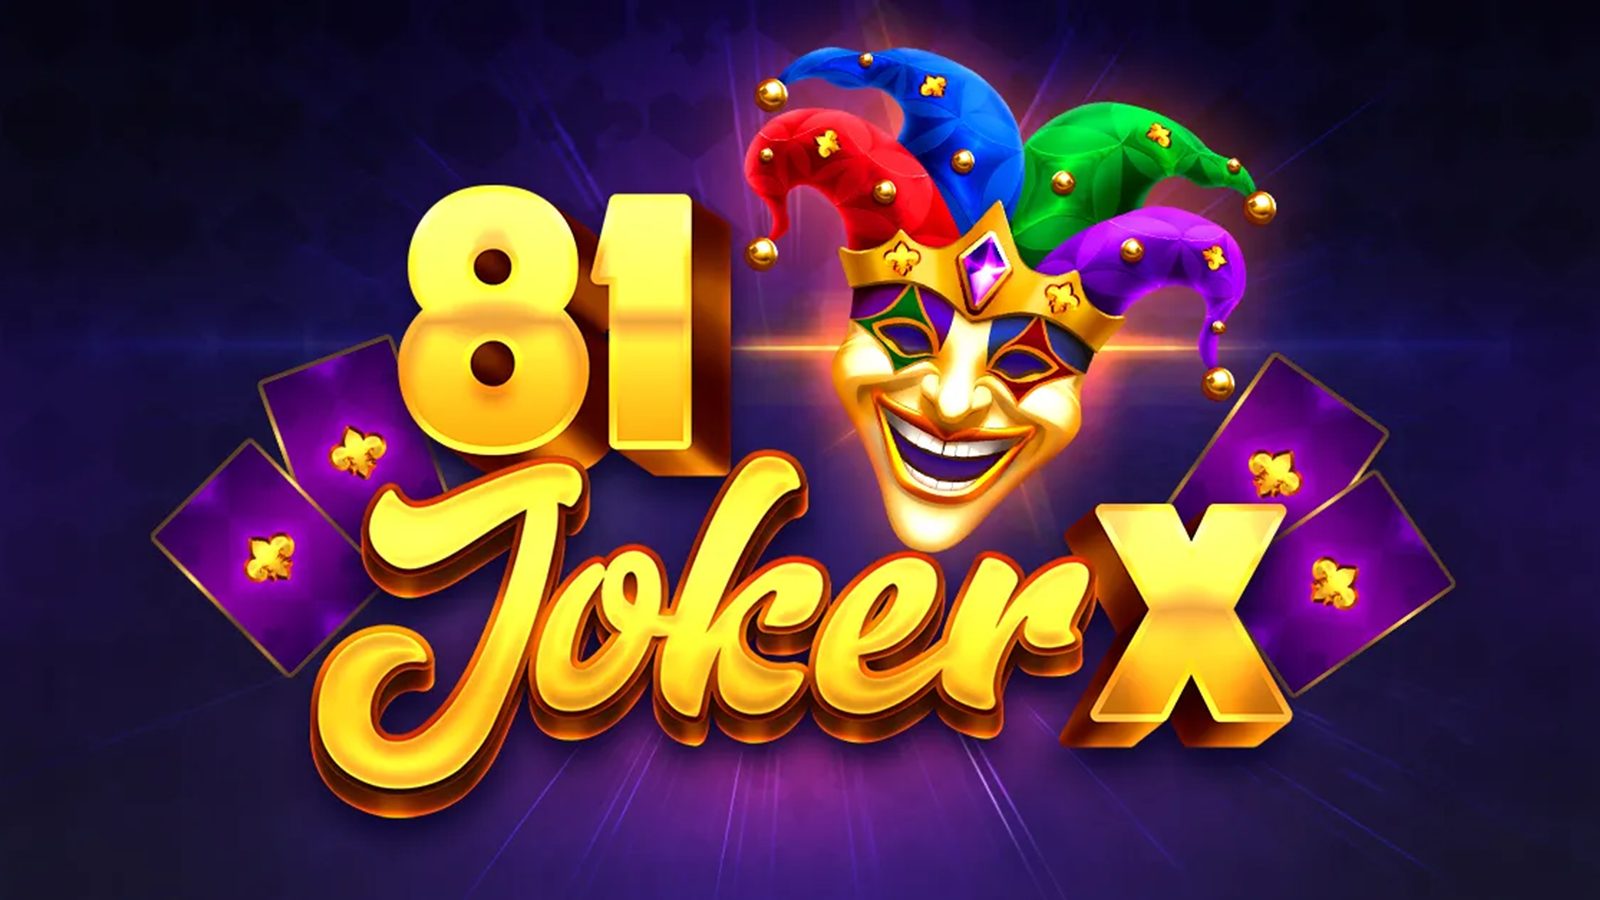 Tom Horn Gaming's 81 Joker X